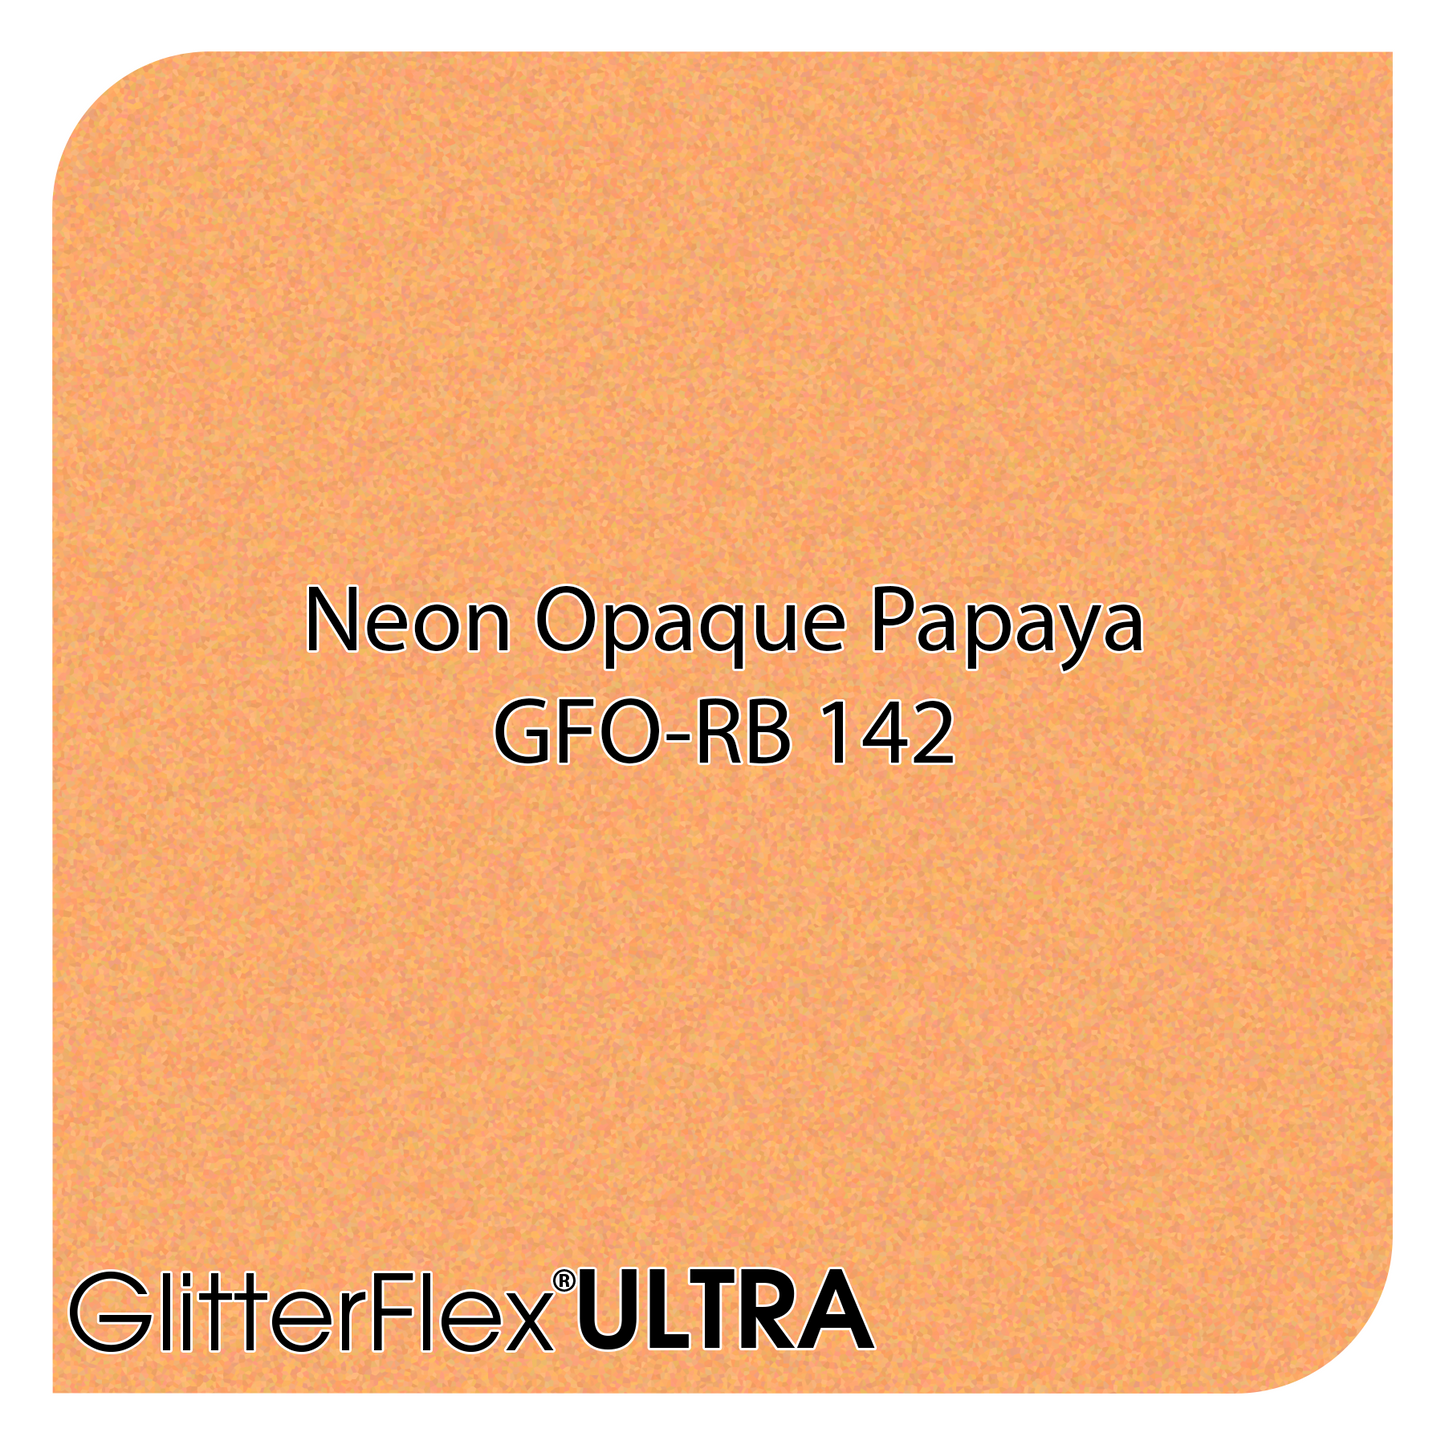 GLITTERFLEX® ULTRA NEON OPAQUES - 12" x 5 Yard (15 Feet)